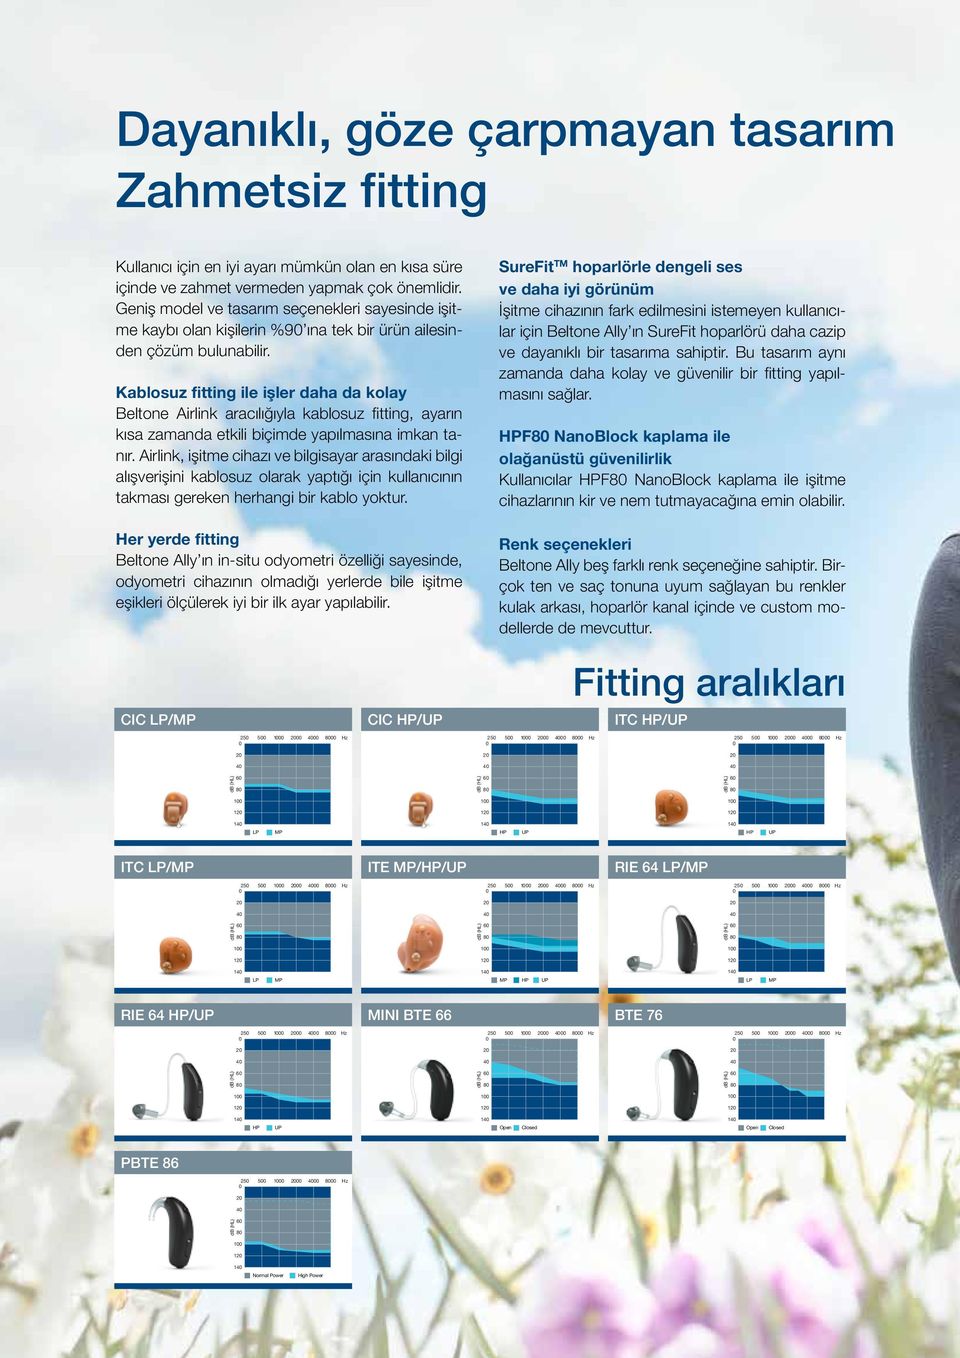 Kablosuz fitting ile işler daha da kolay Beltone Airlink aracılığıyla kablosuz fitting, ayarın kısa zamanda etkili biçimde yapılmasına imkan tanır.